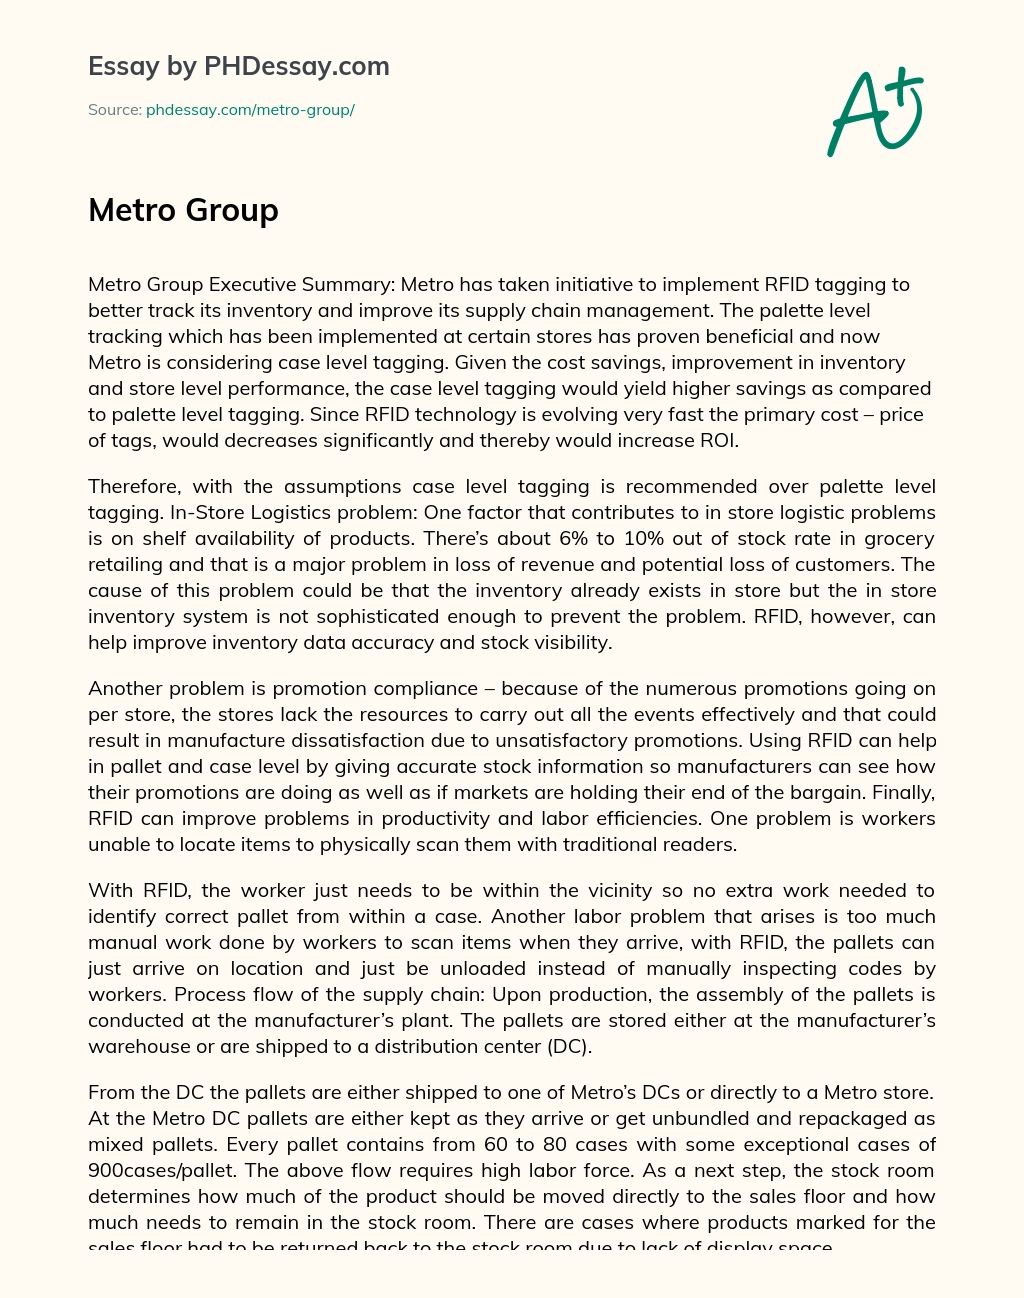 Metro Group essay